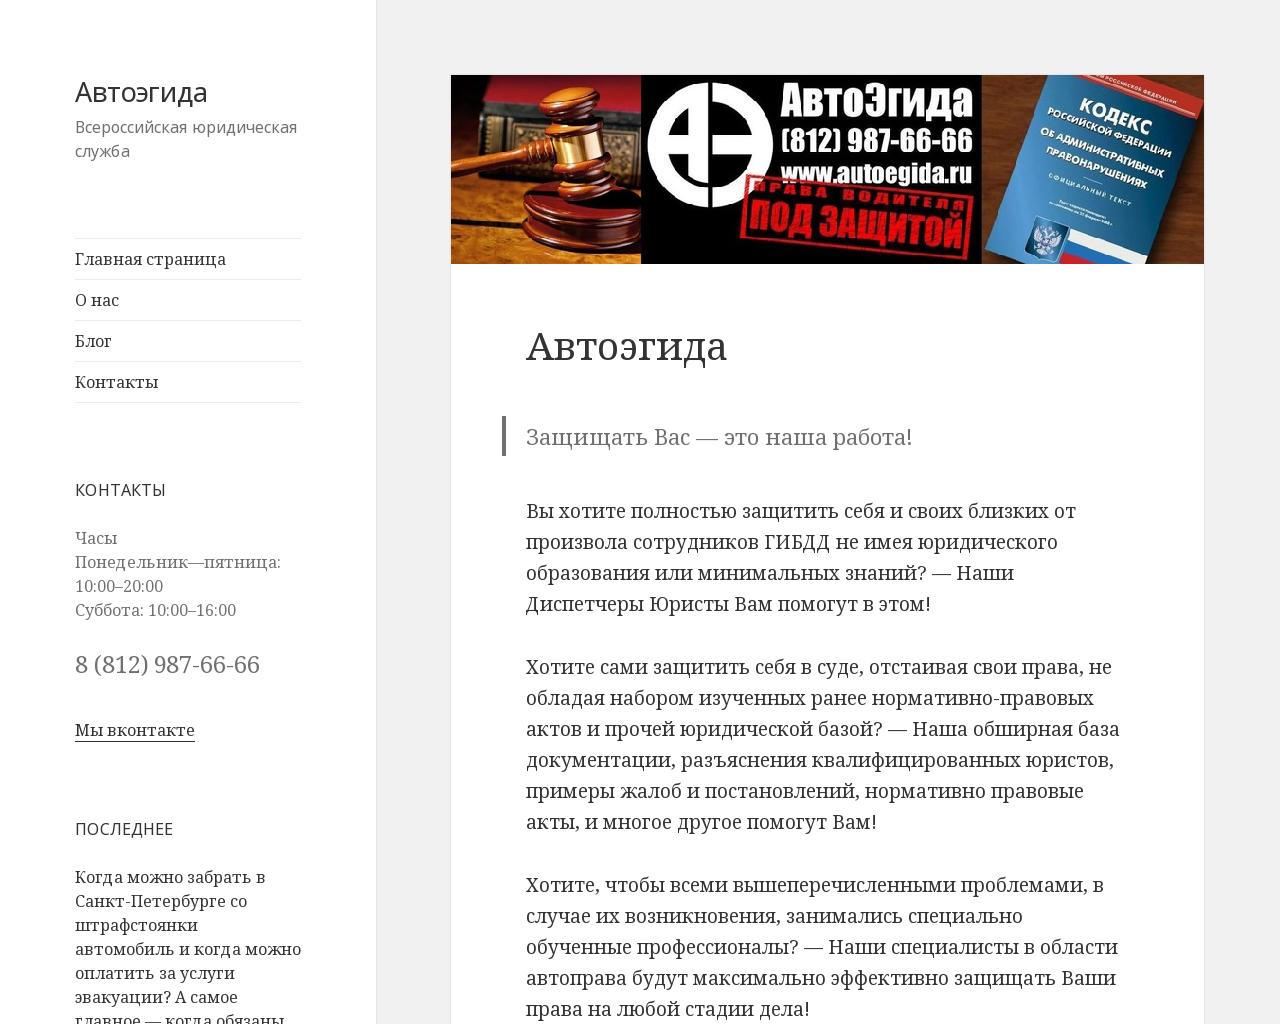 Изображение сайта autoegida.ru в разрешении 1280x1024